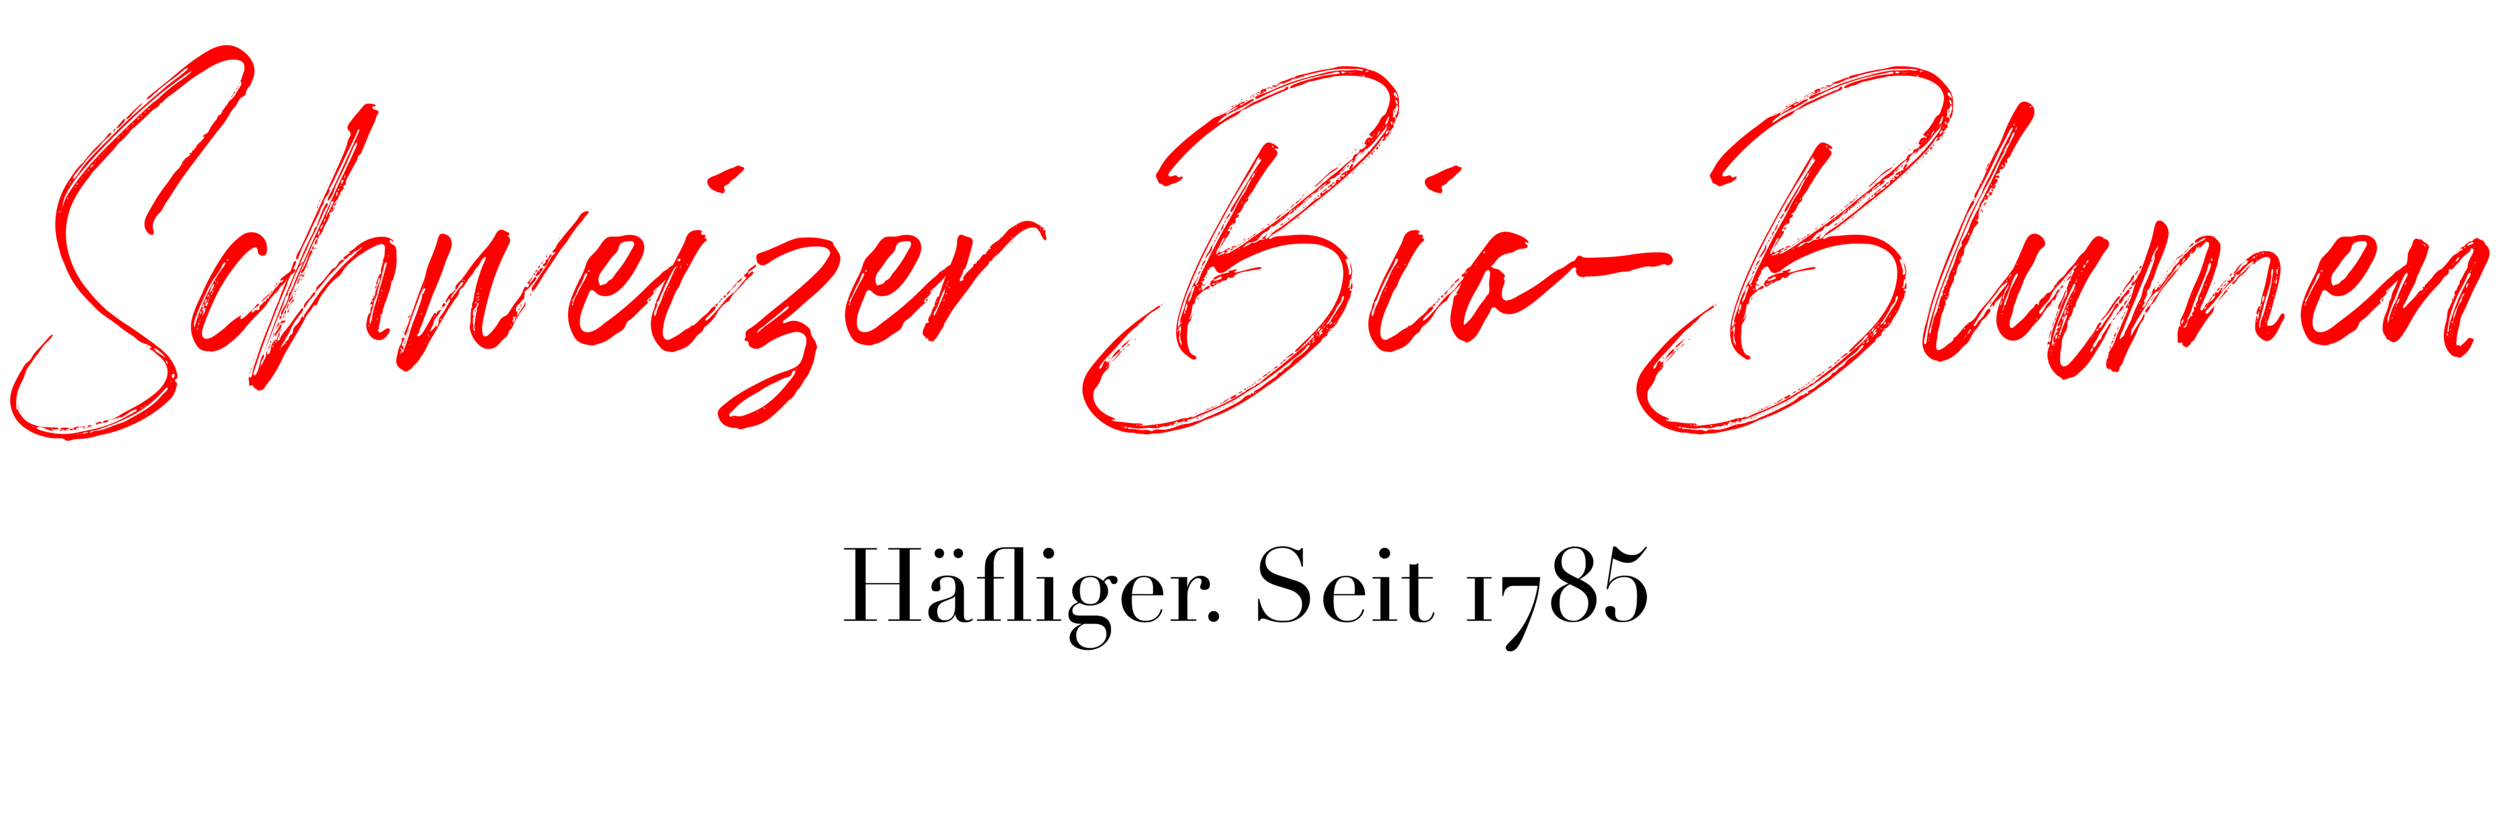 Schweizer Bio-Blumen